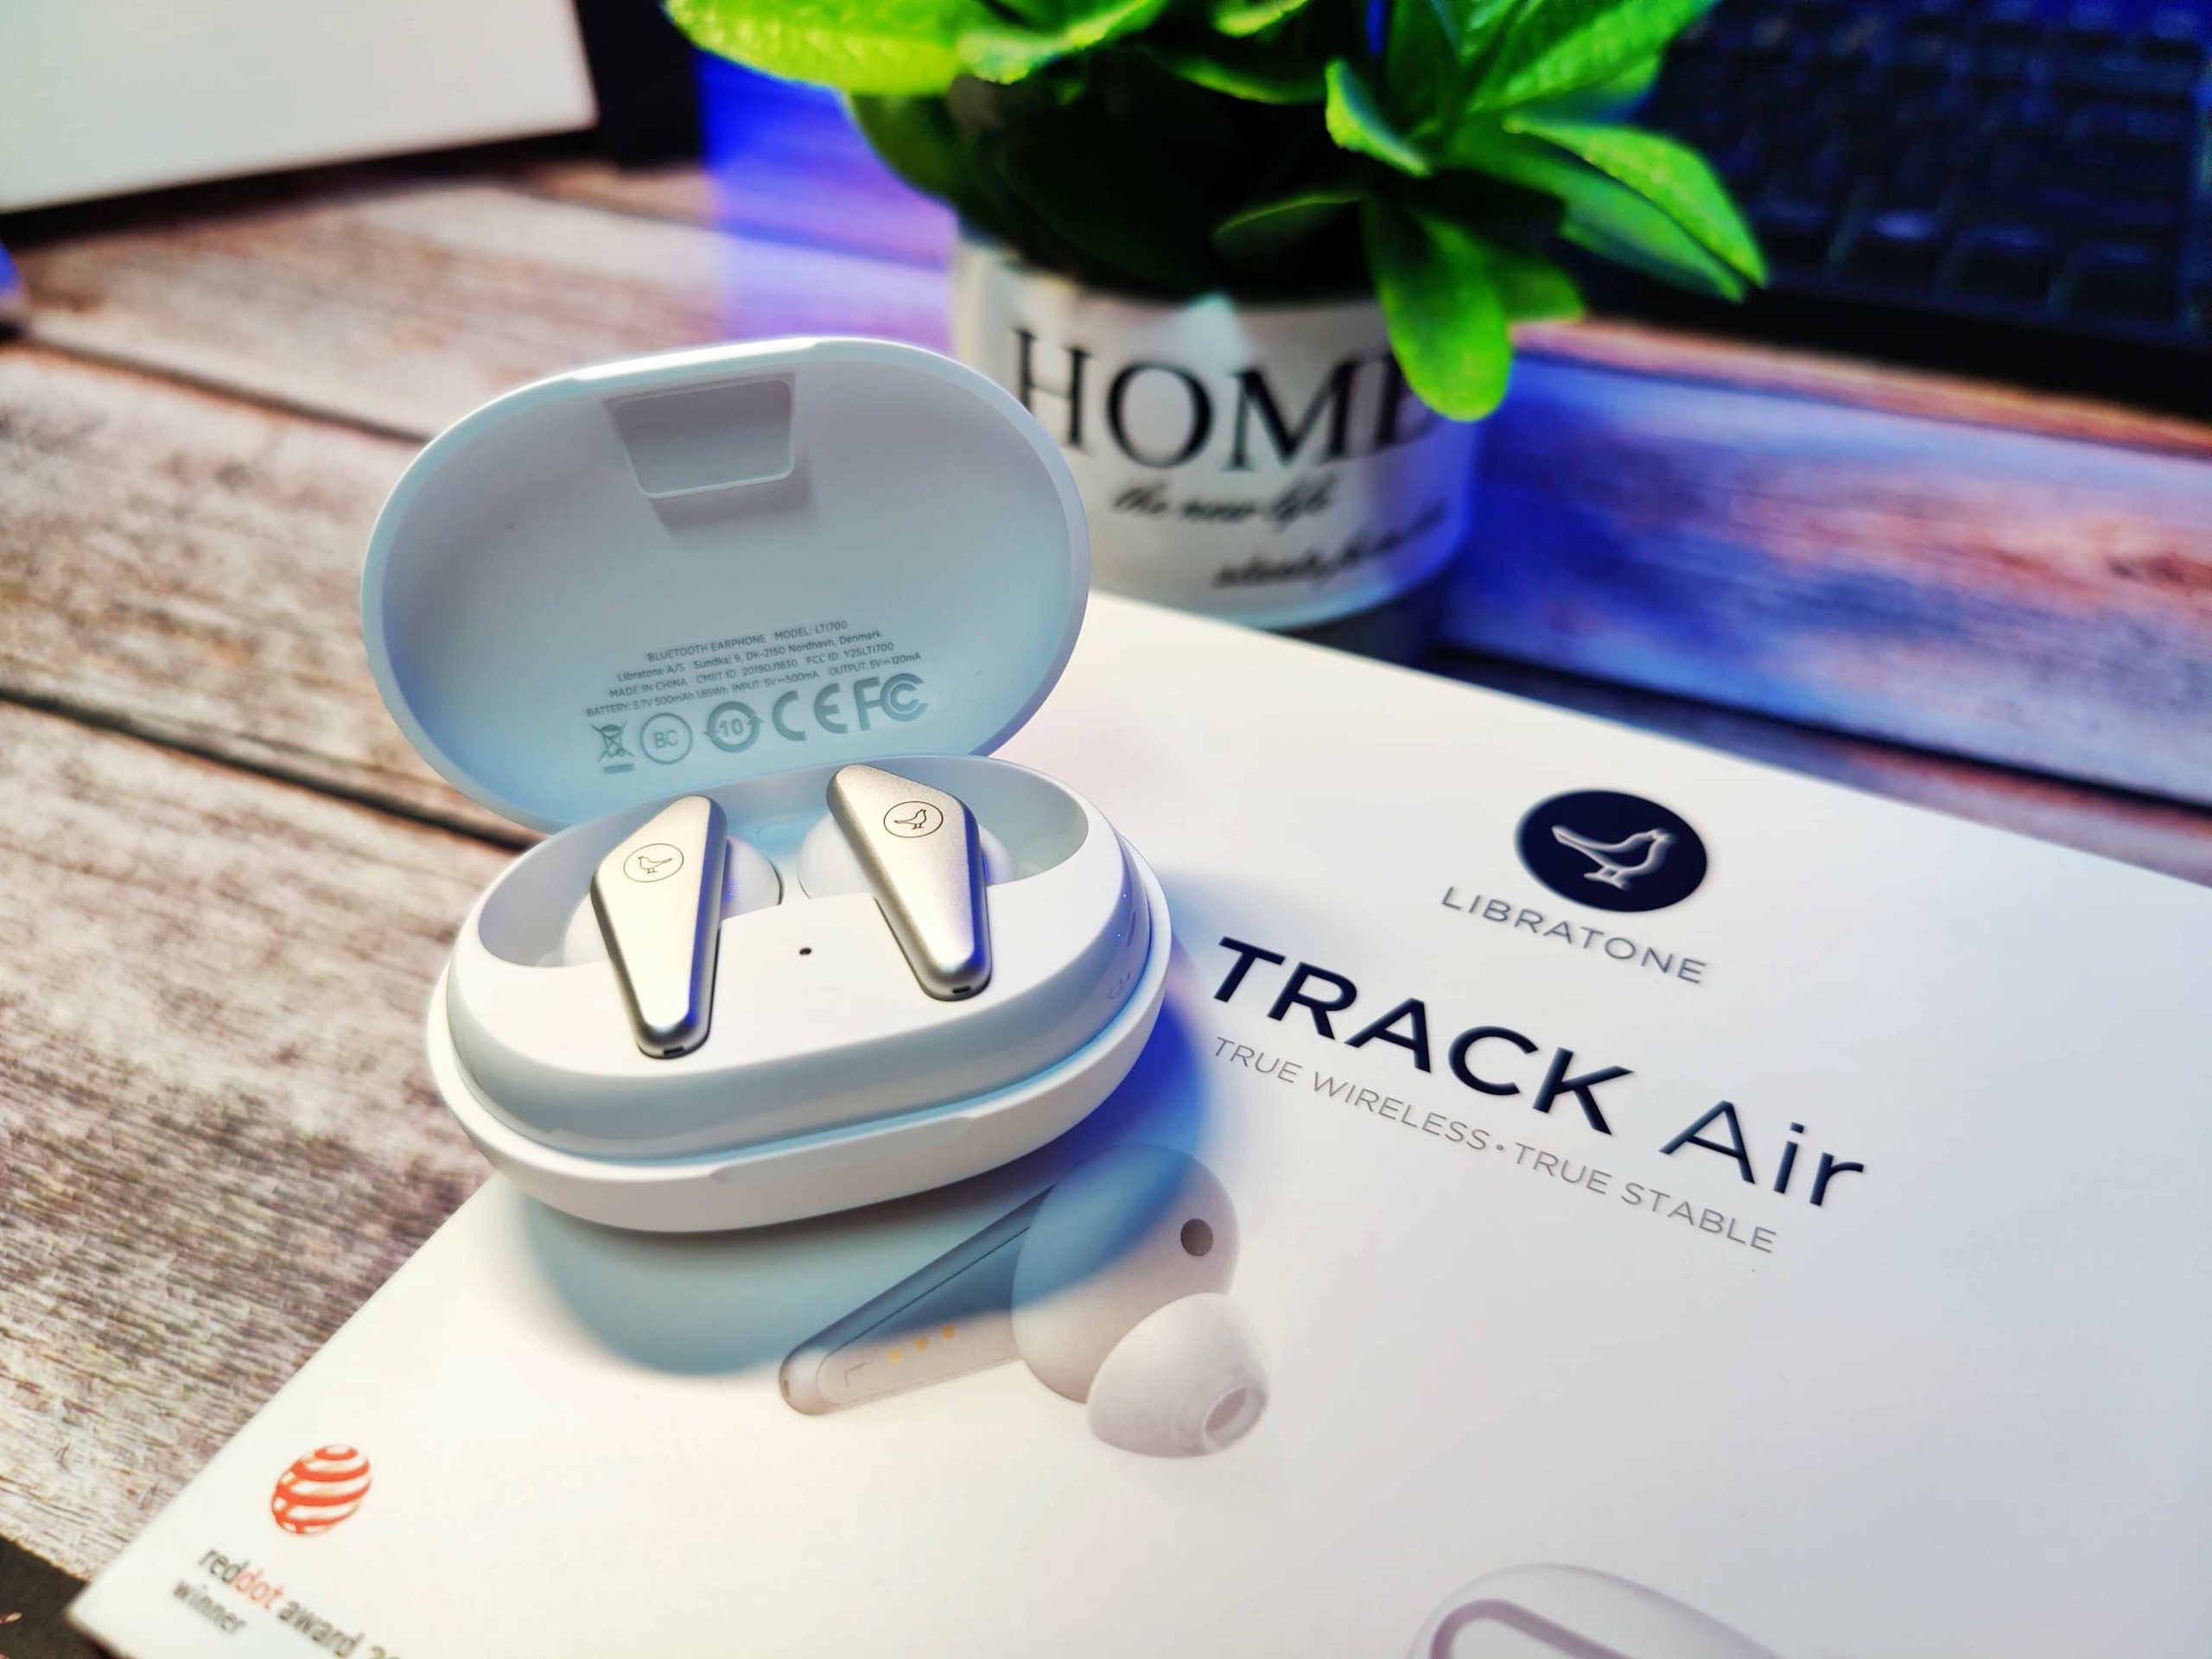 LIBRATONE TRACK Air真無線藍牙耳機 – 來自北歐純粹之聲、收音清晰做工精細